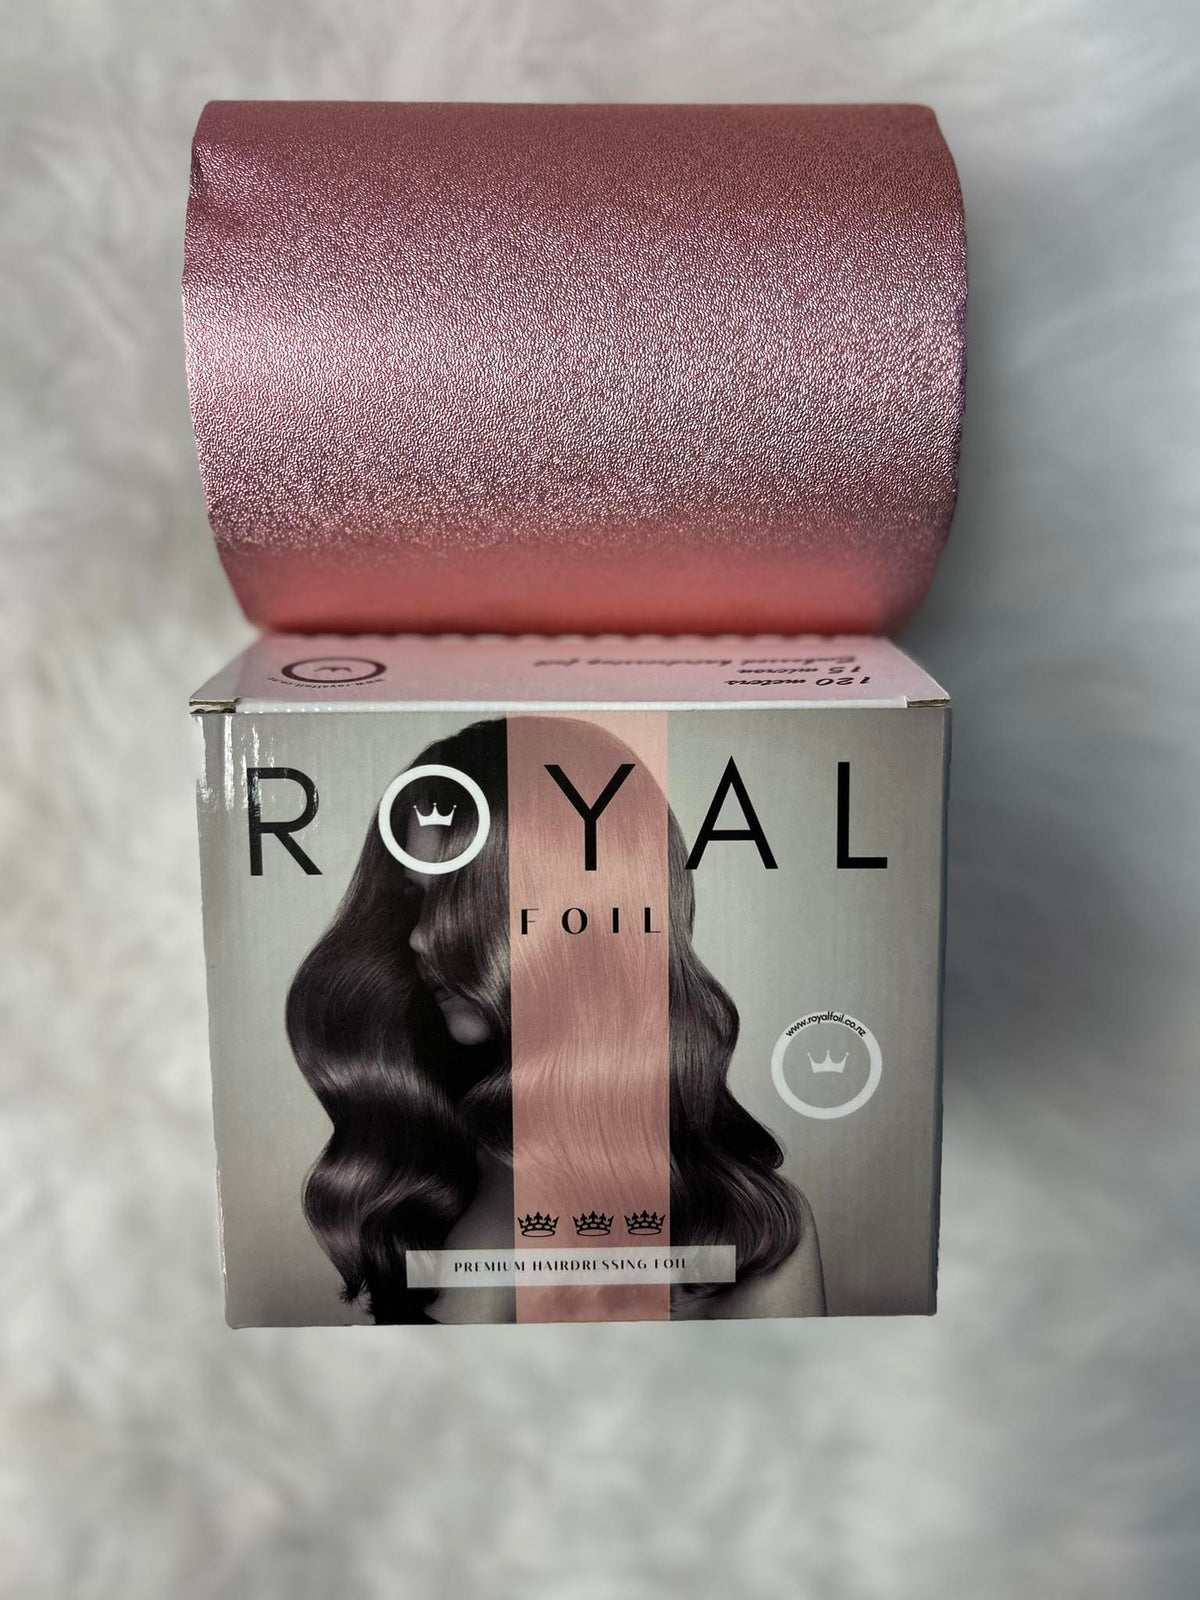 Royal Foil Salon Foil